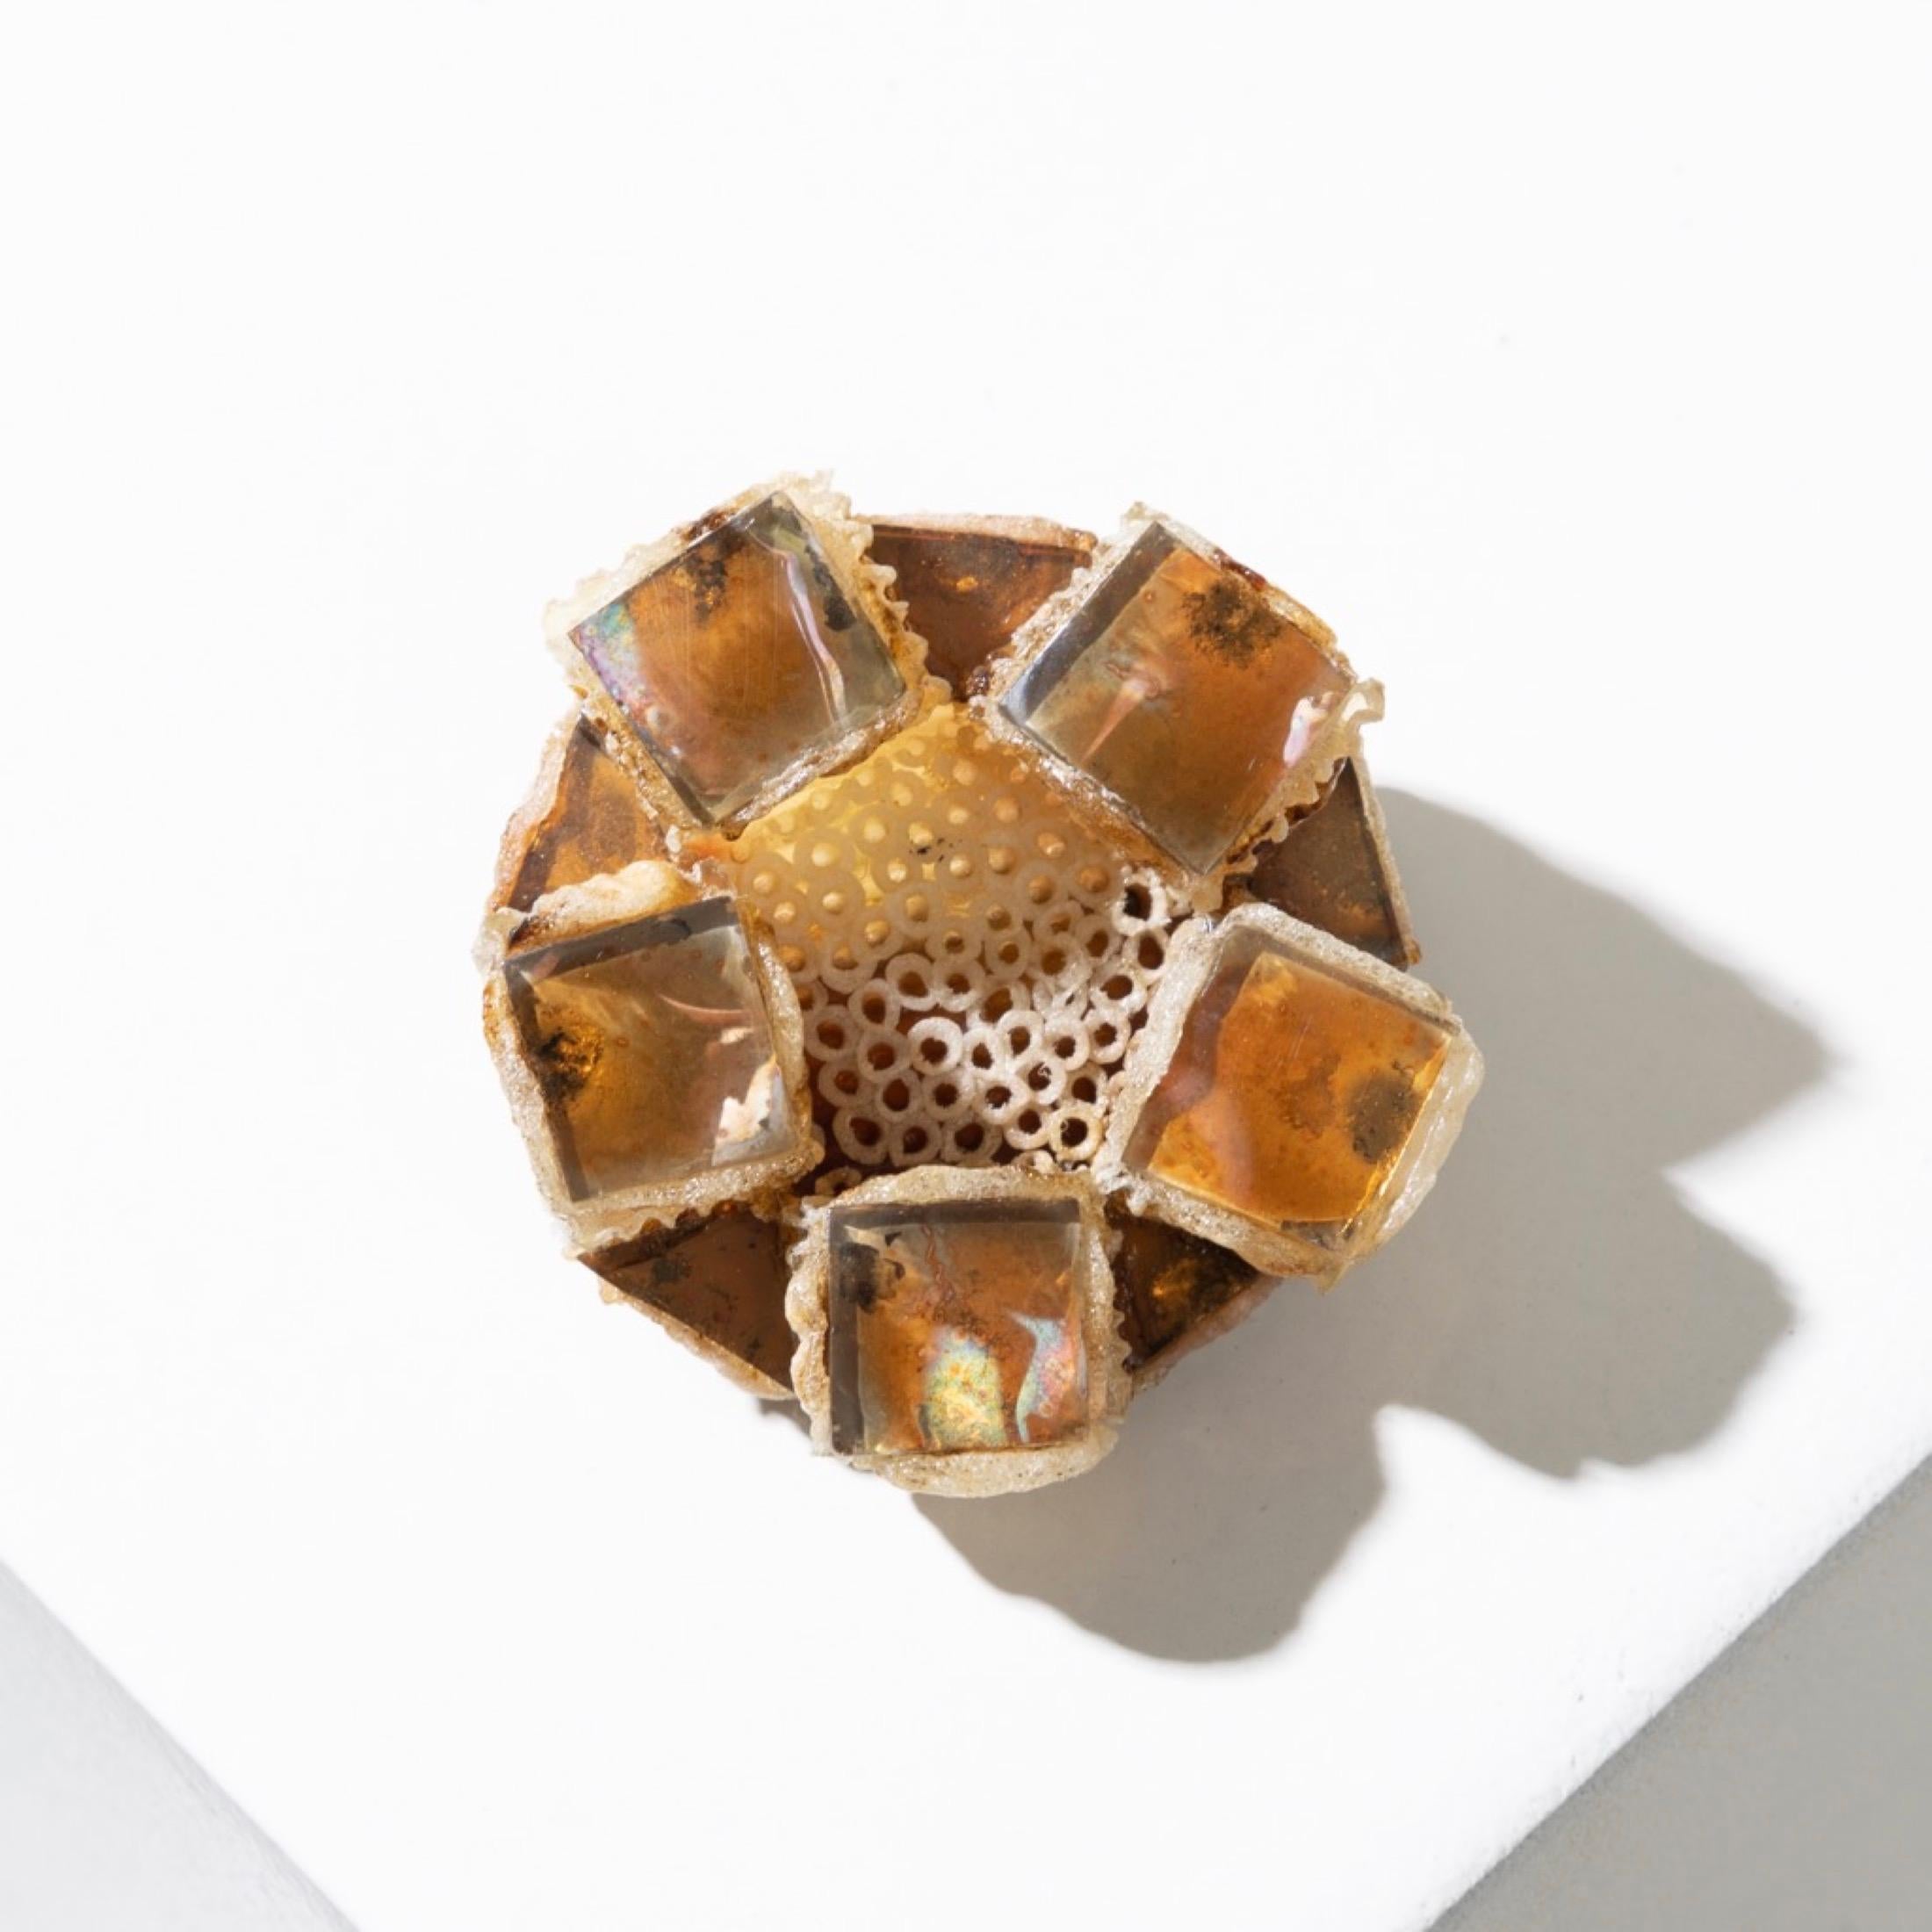 Diese beigefarbene Talosel-Brosche ist ein einzigartiges Schmuckstück, das die ästhetischen Merkmale der Arbeiten von Line Vautrin perfekt widerspiegelt. Er ist mit kleinen bernsteinfarbenen Spiegeln verziert, die in das beigefarbene Talosel